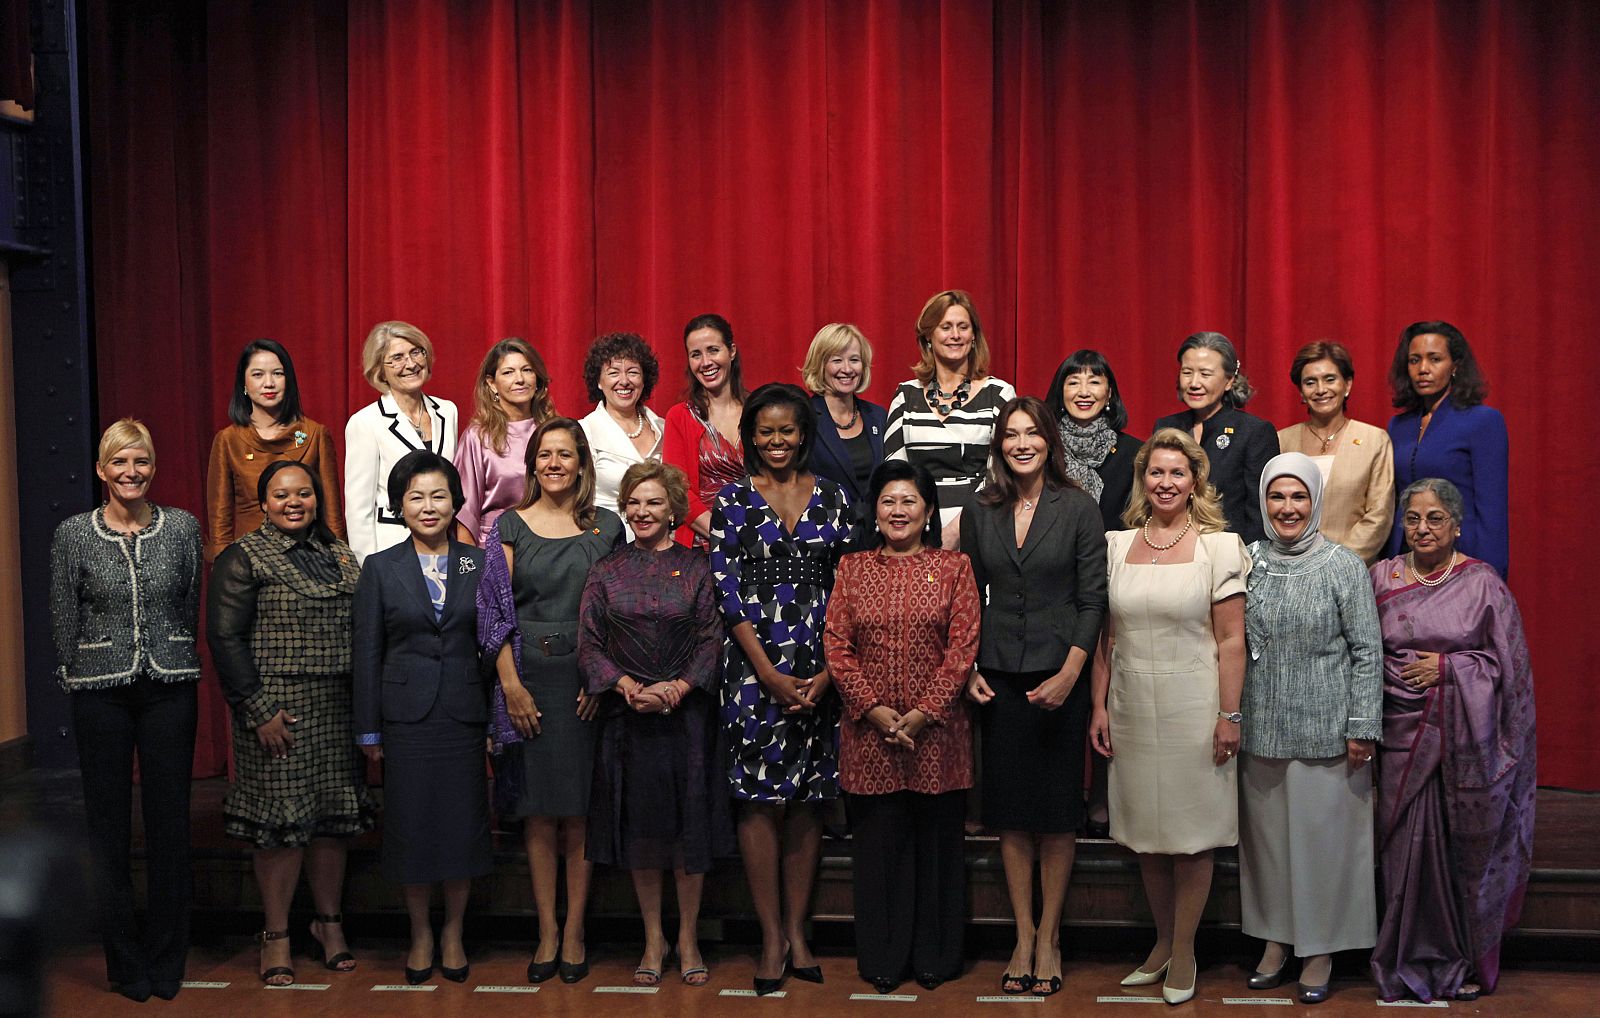 Las esposas de los jefes de Estado posan para la foto oficial de 'la otra cumbre' del G-20. Sonsoles Espinosa aparece en el extremo izquierdo de la imagen.